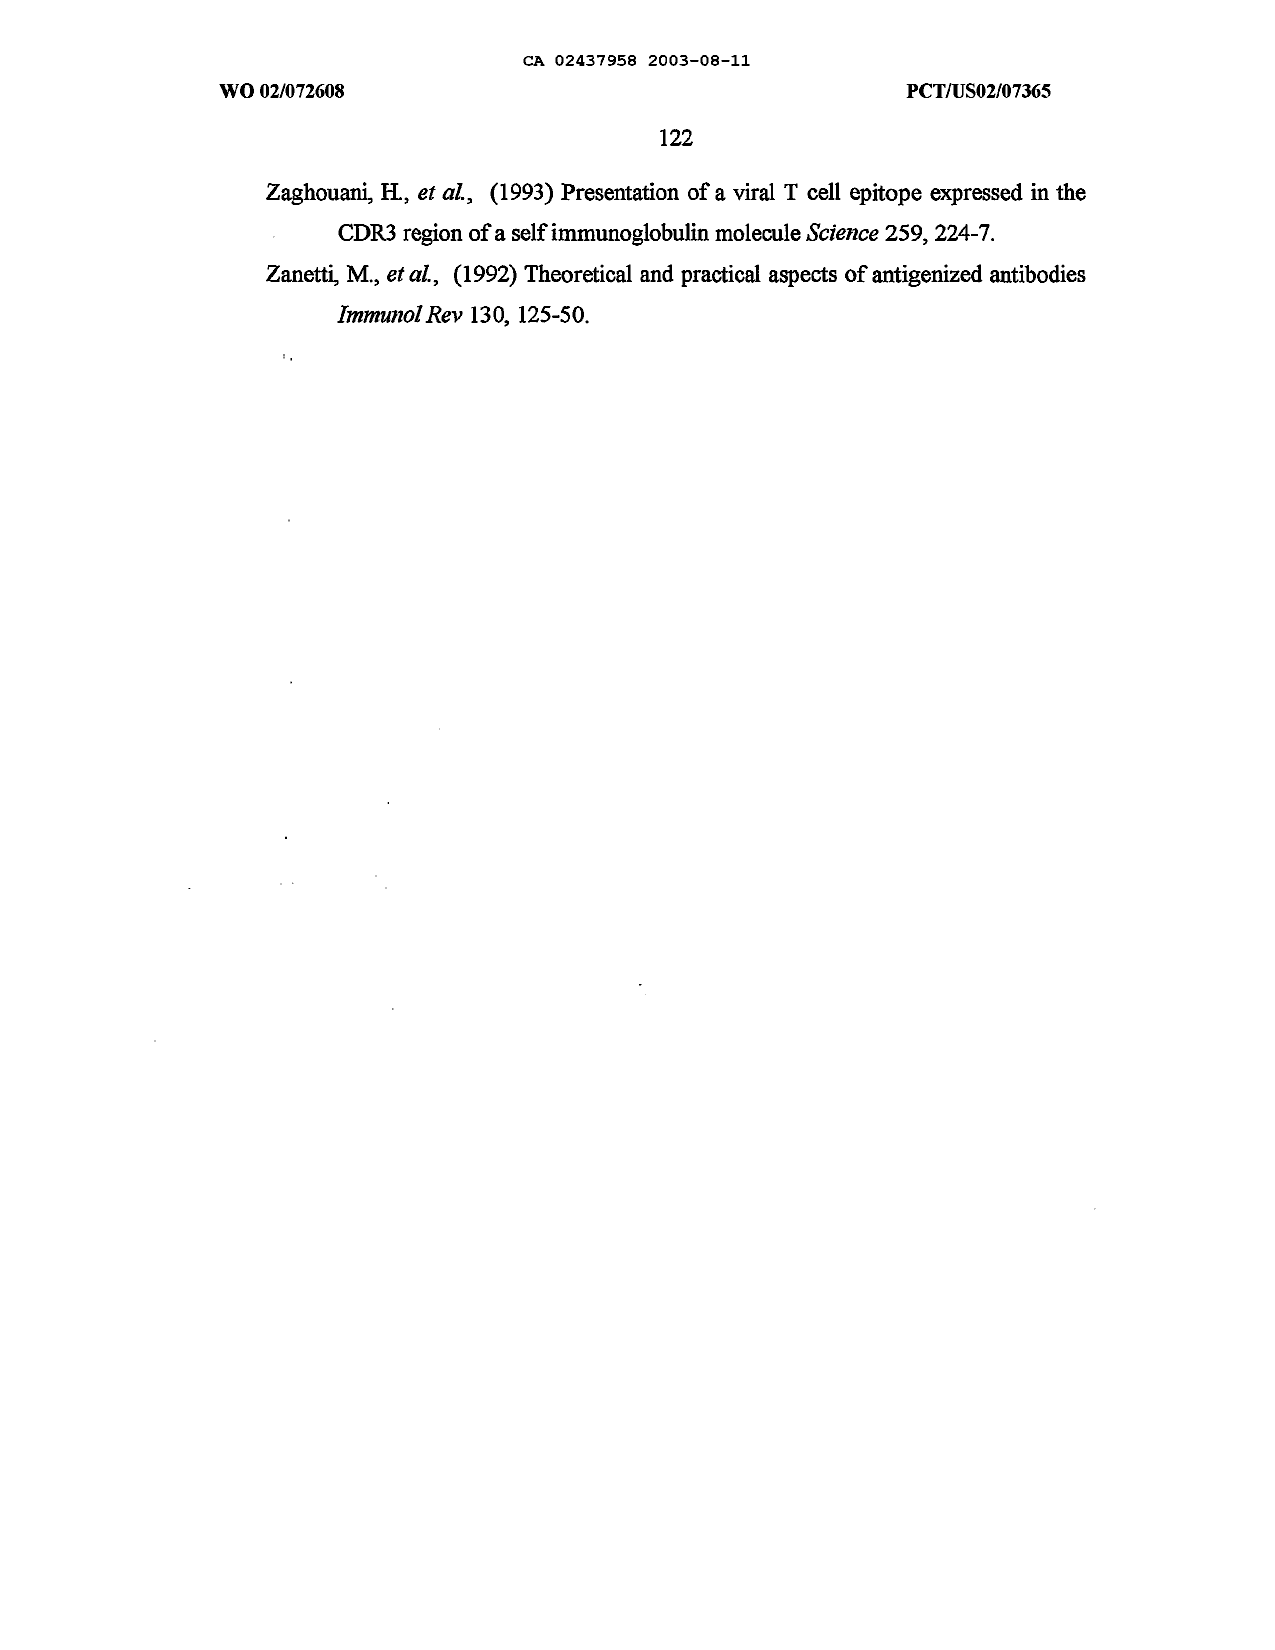 Canadian Patent Document 2437958. Description 20101013. Image 123 of 123